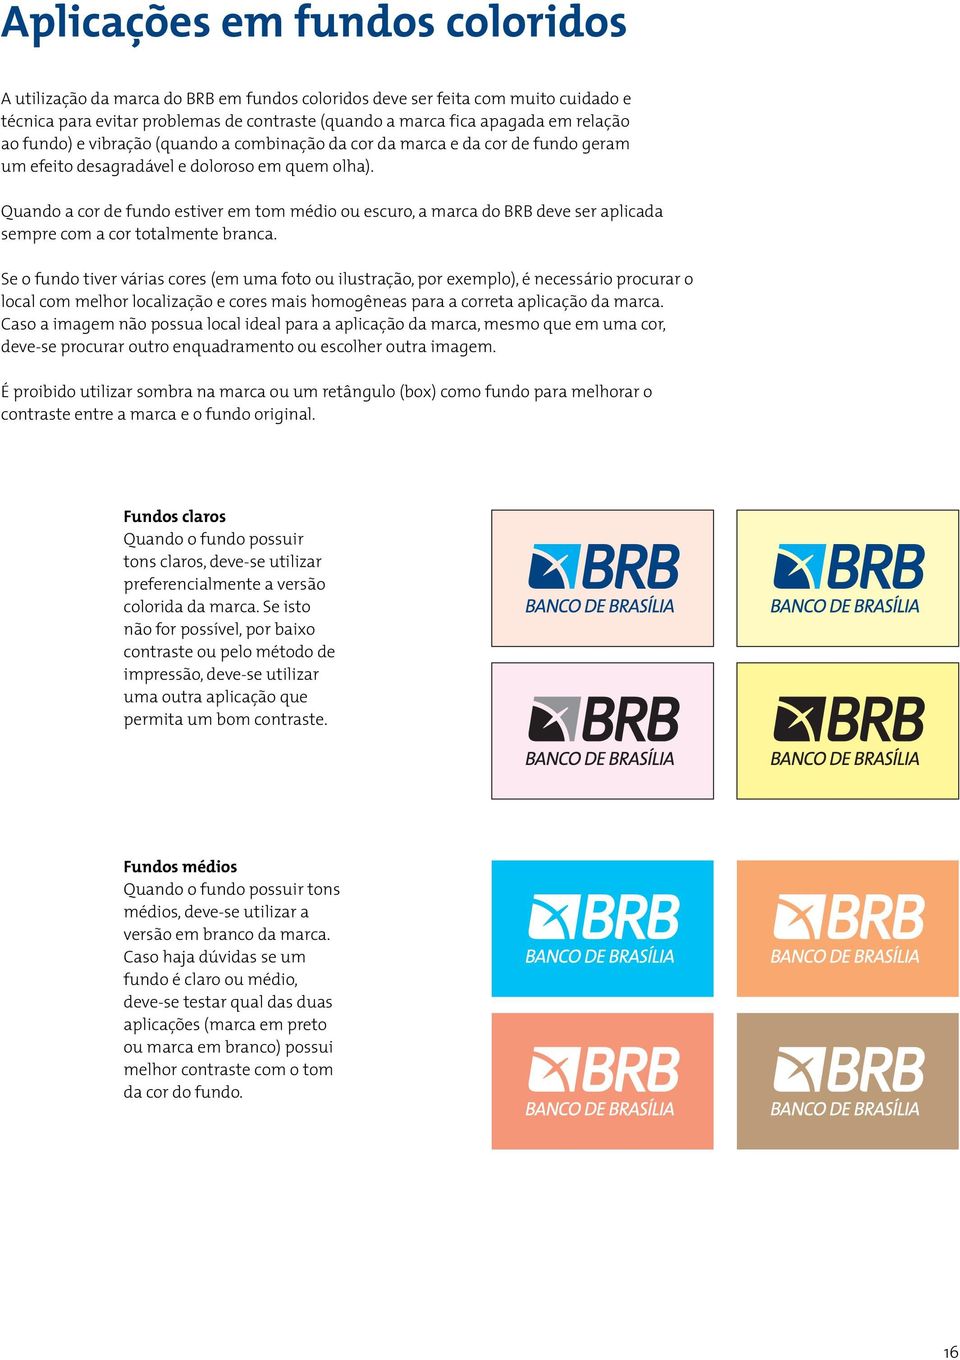 Quando a cor de fundo estiver em tom médio ou escuro, a marca do BRB deve ser aplicada sempre com a cor totalmente branca.